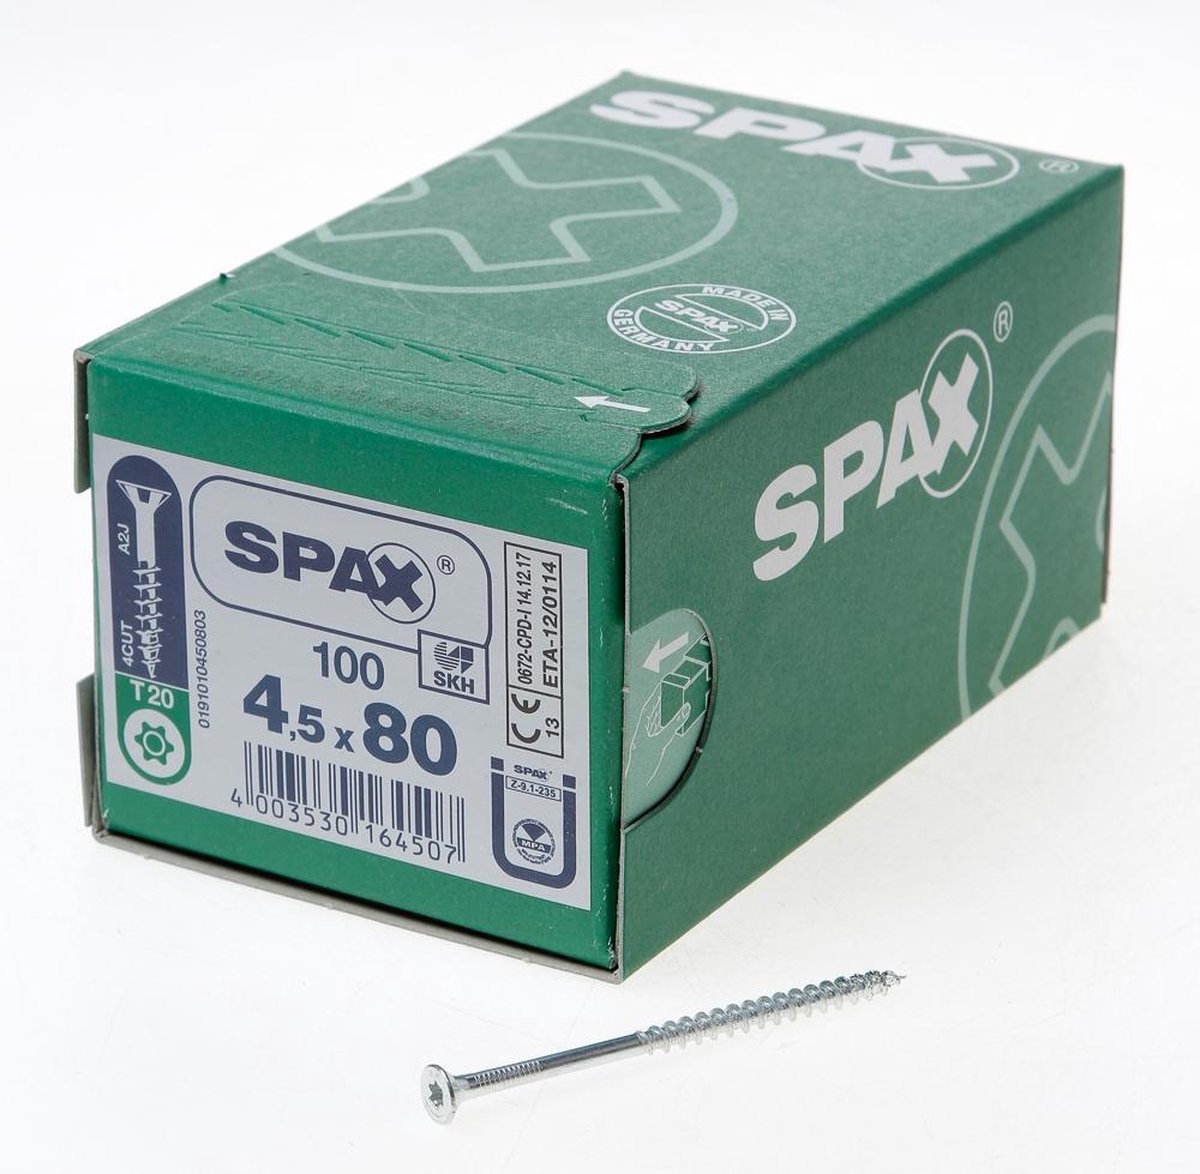 SPAX 191010450803 Universele schroef, Verzonken kop, 4.5 x 80, Deeldraad, T-STAR plus T20 - WIROX - 100 stuks